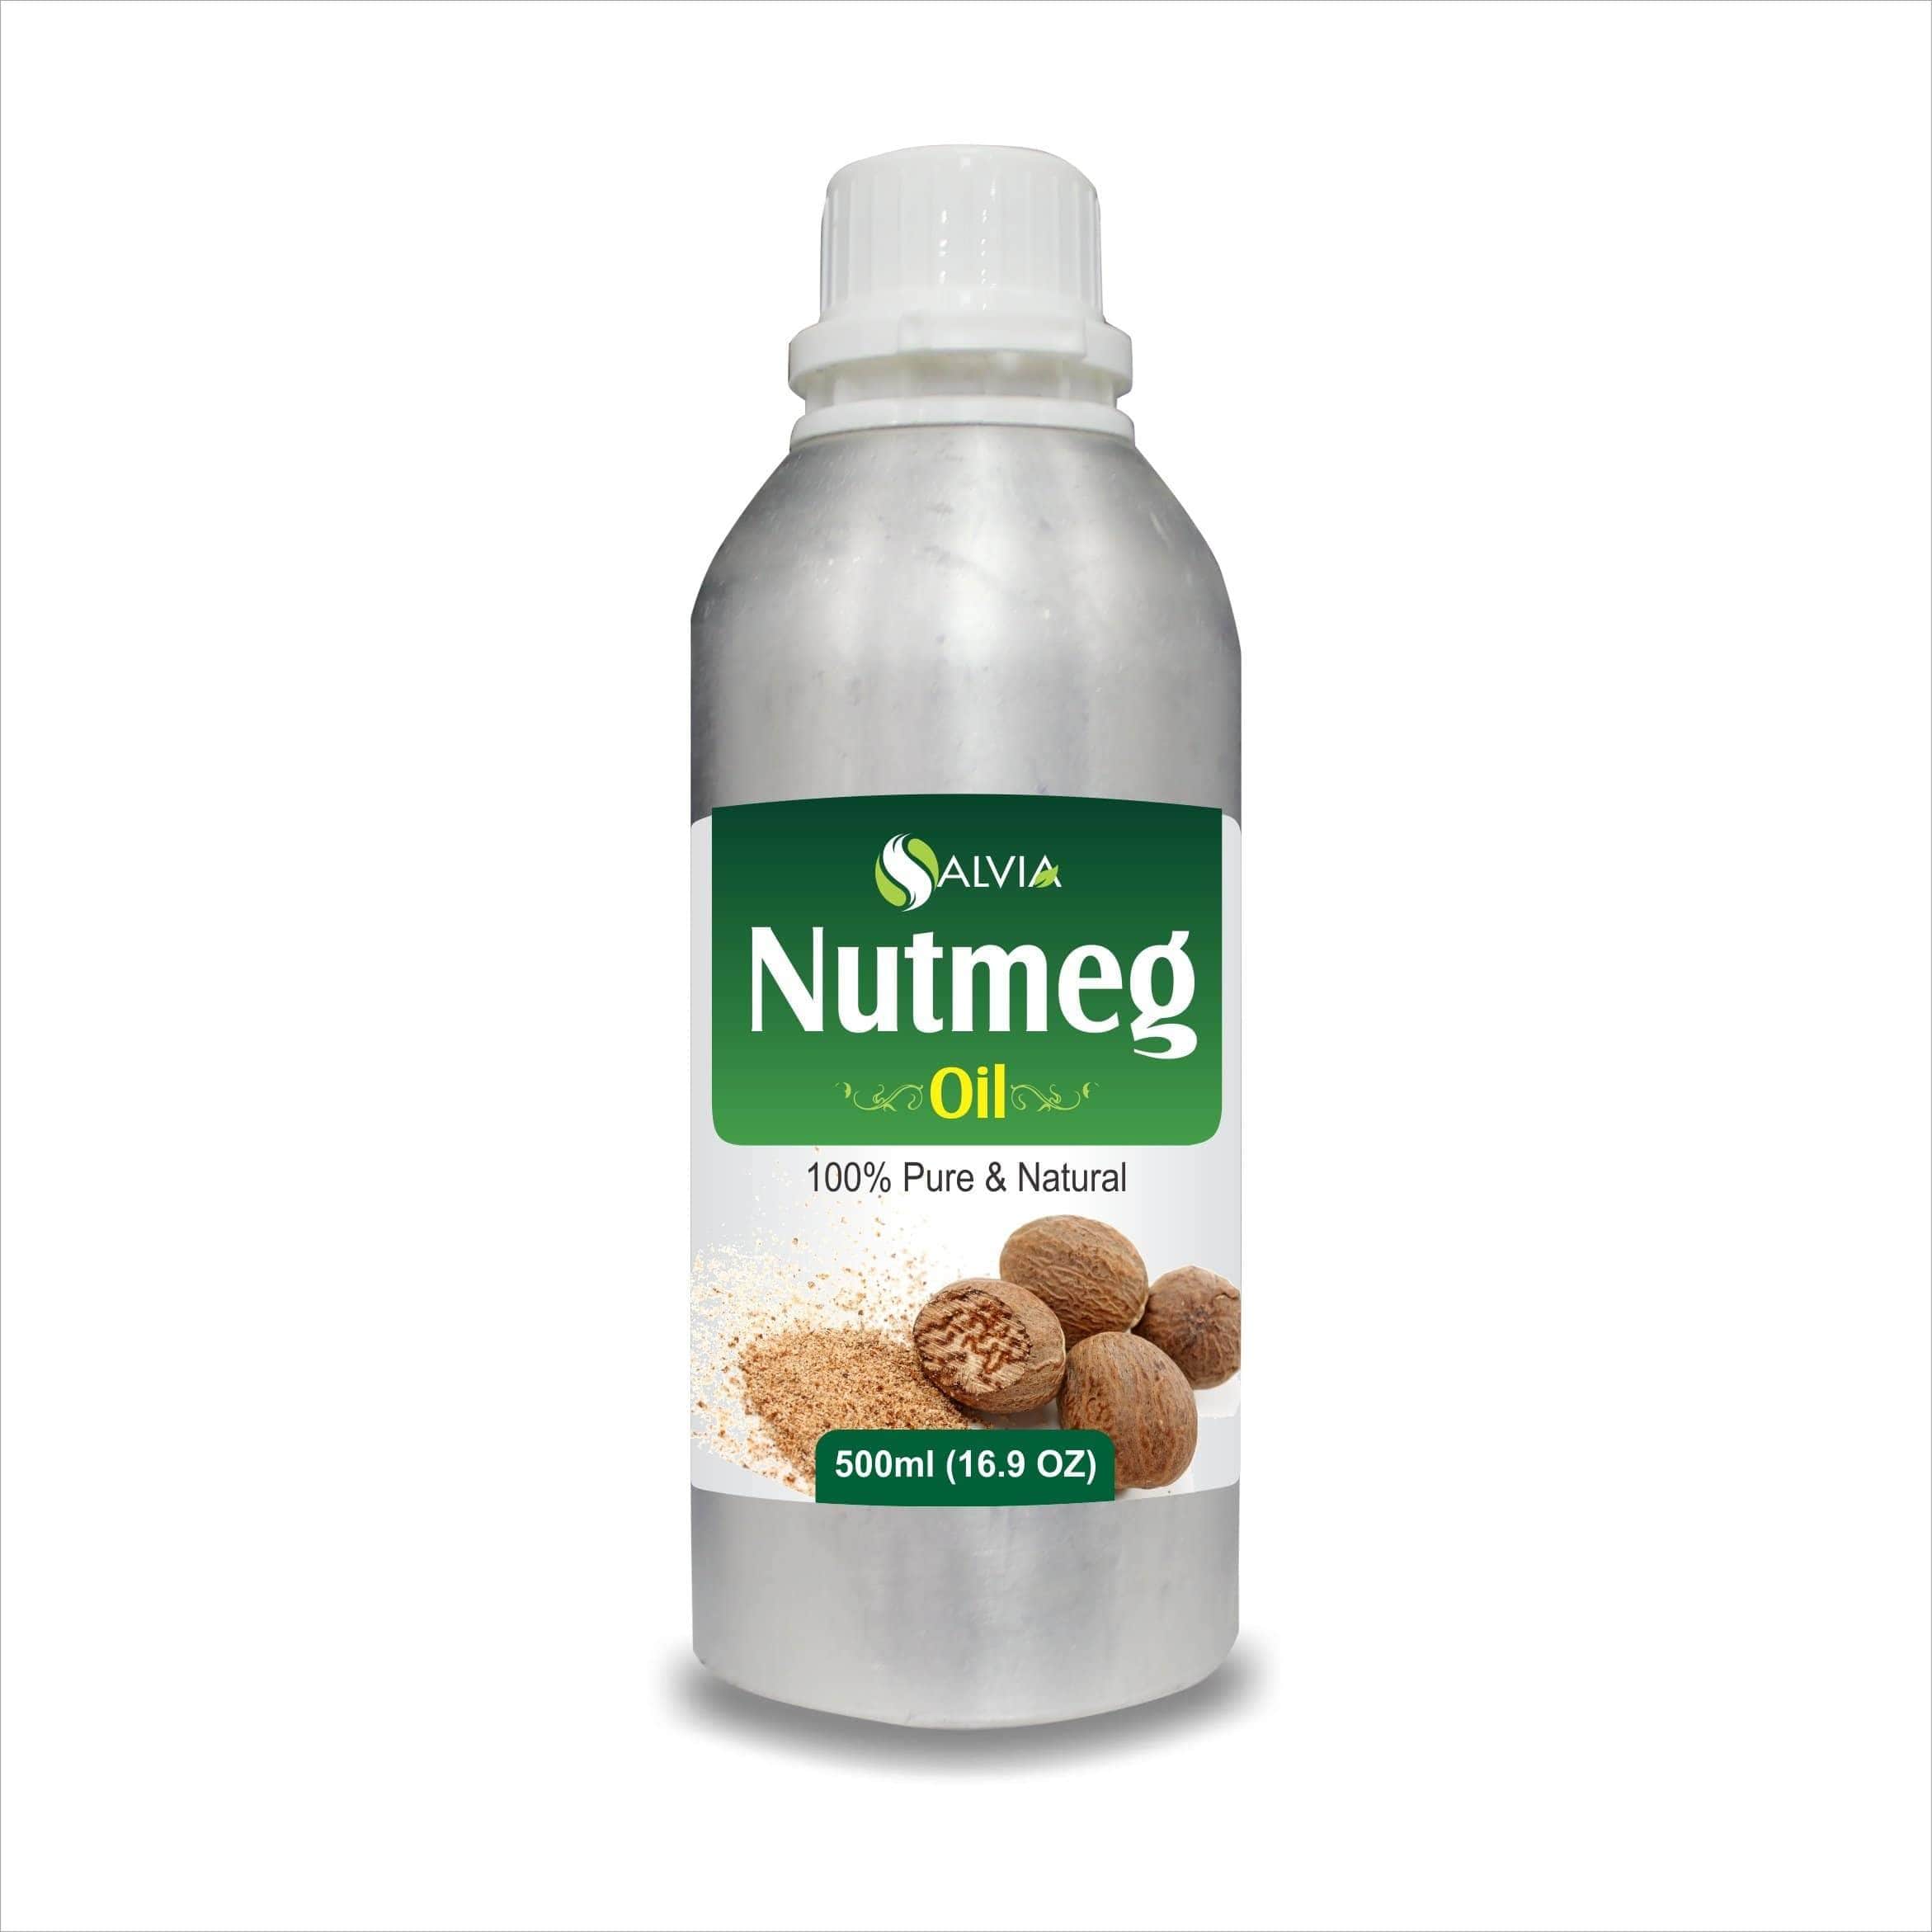 nutmeg oil for skin